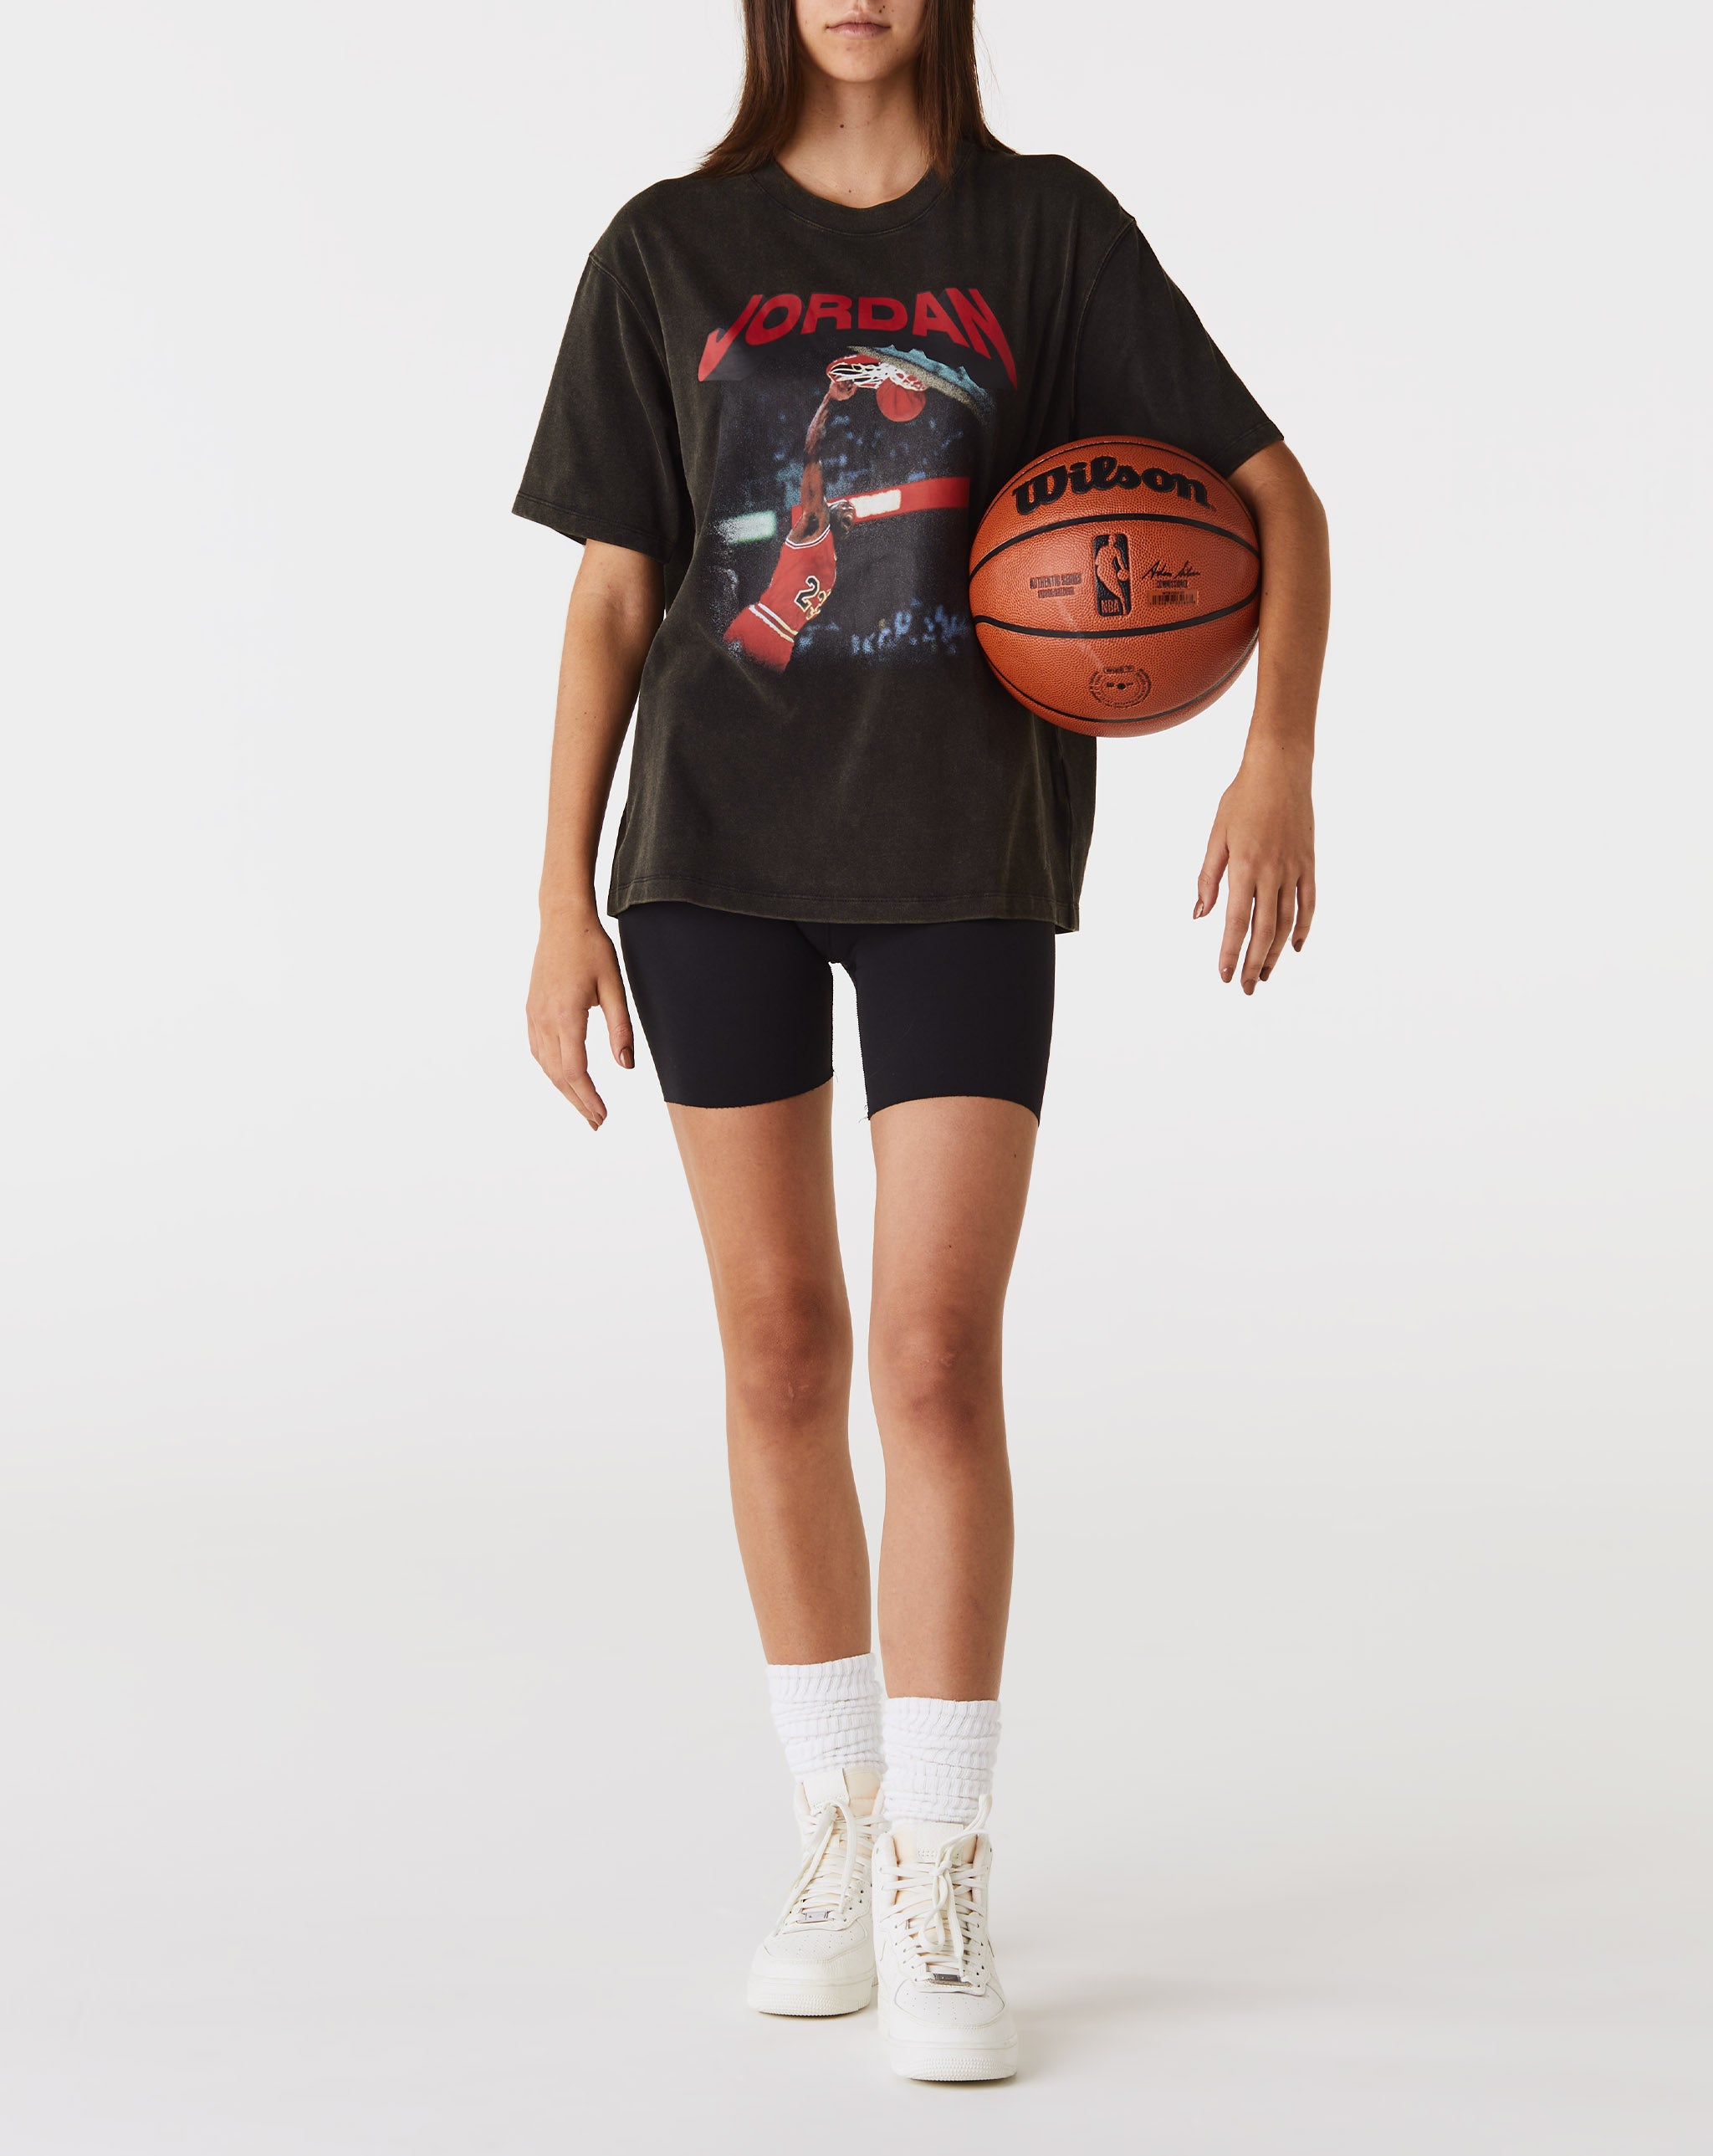 Air Jordan Women's (Her)itage T-shirt  - Cheap Cerbe Jordan outlet